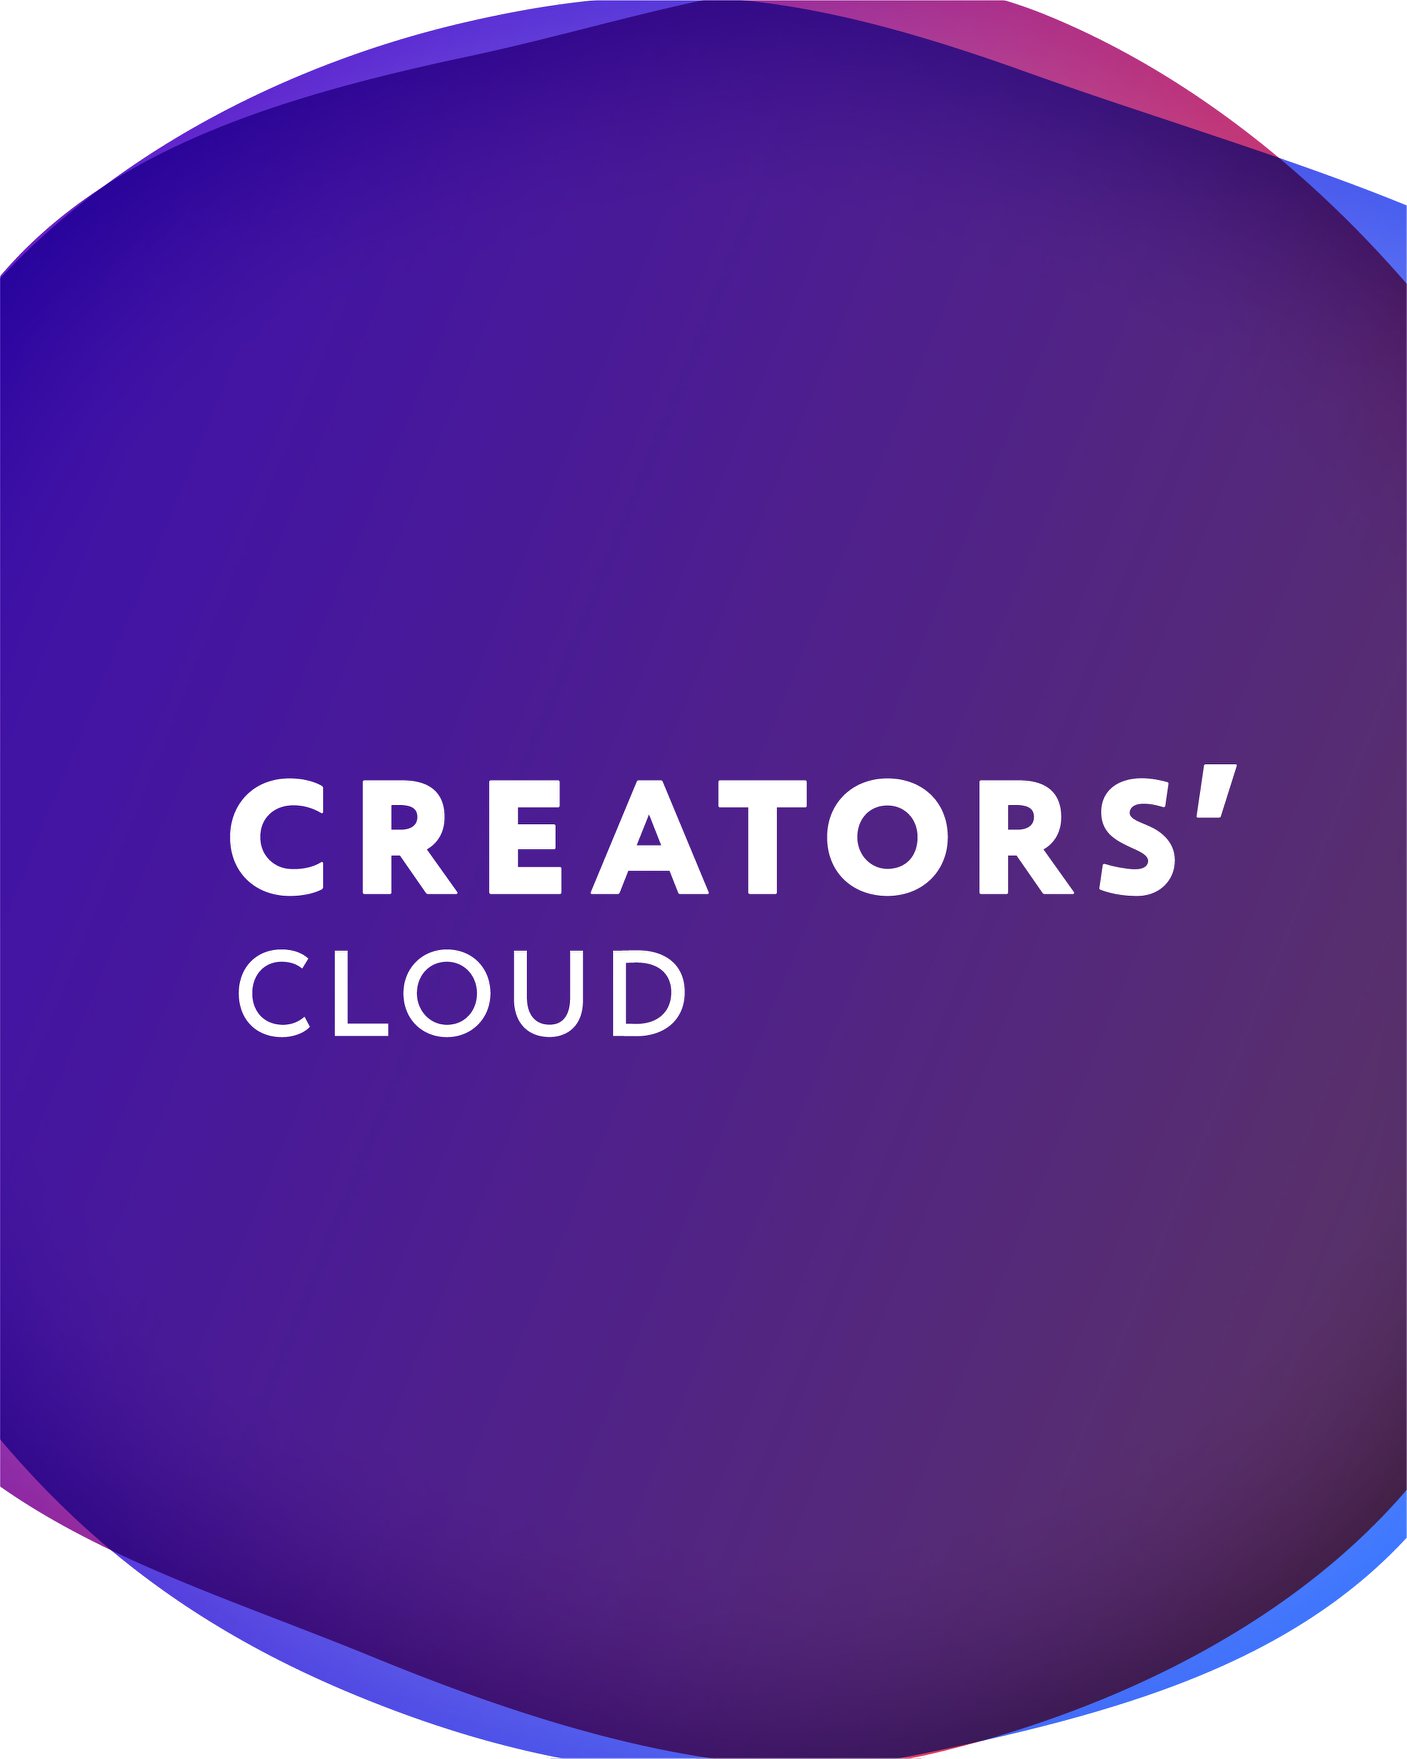 โซนี่เปิด Creators’ Cloud แอปพลิเคชั่นที่ผสานพลังการทำงานระหว่างกล้อง และ Cloud สนับสนุนผลงานสุดสร้างสรรค์ของคอนเทนต์ครีเอเตอร์ทั่วโลก